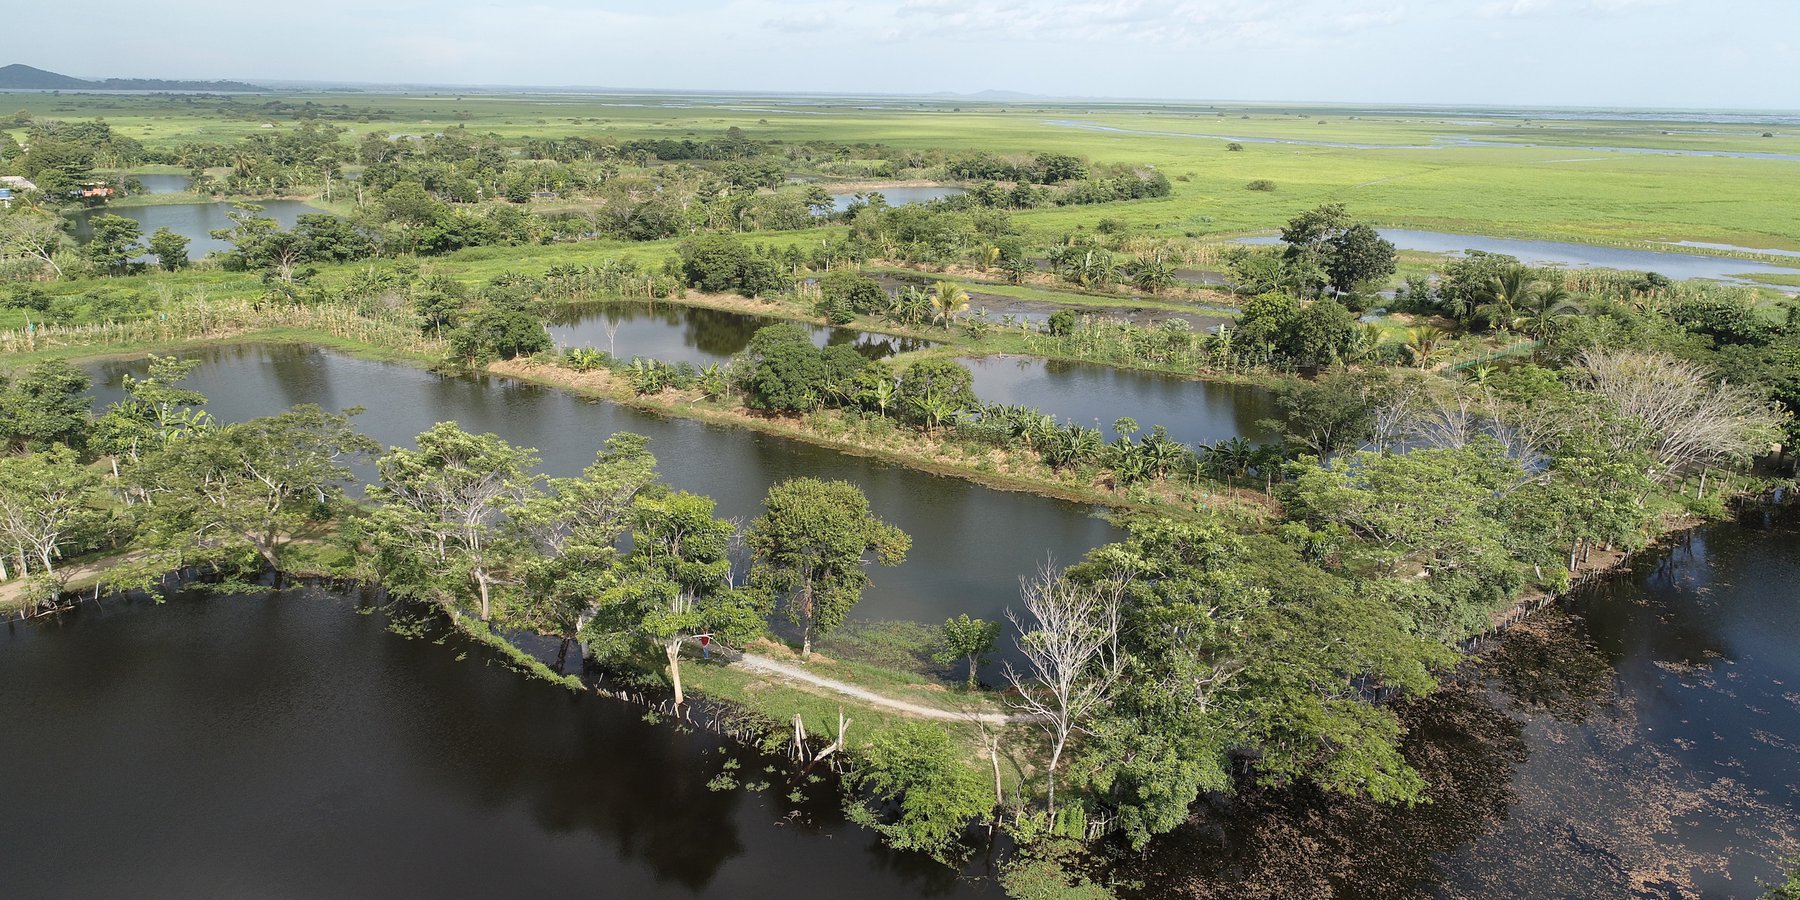 Agricultura anfibia: Vista aerea de los estanques para piscicultura y diversos cultivos de subsistencia sobre camellones.